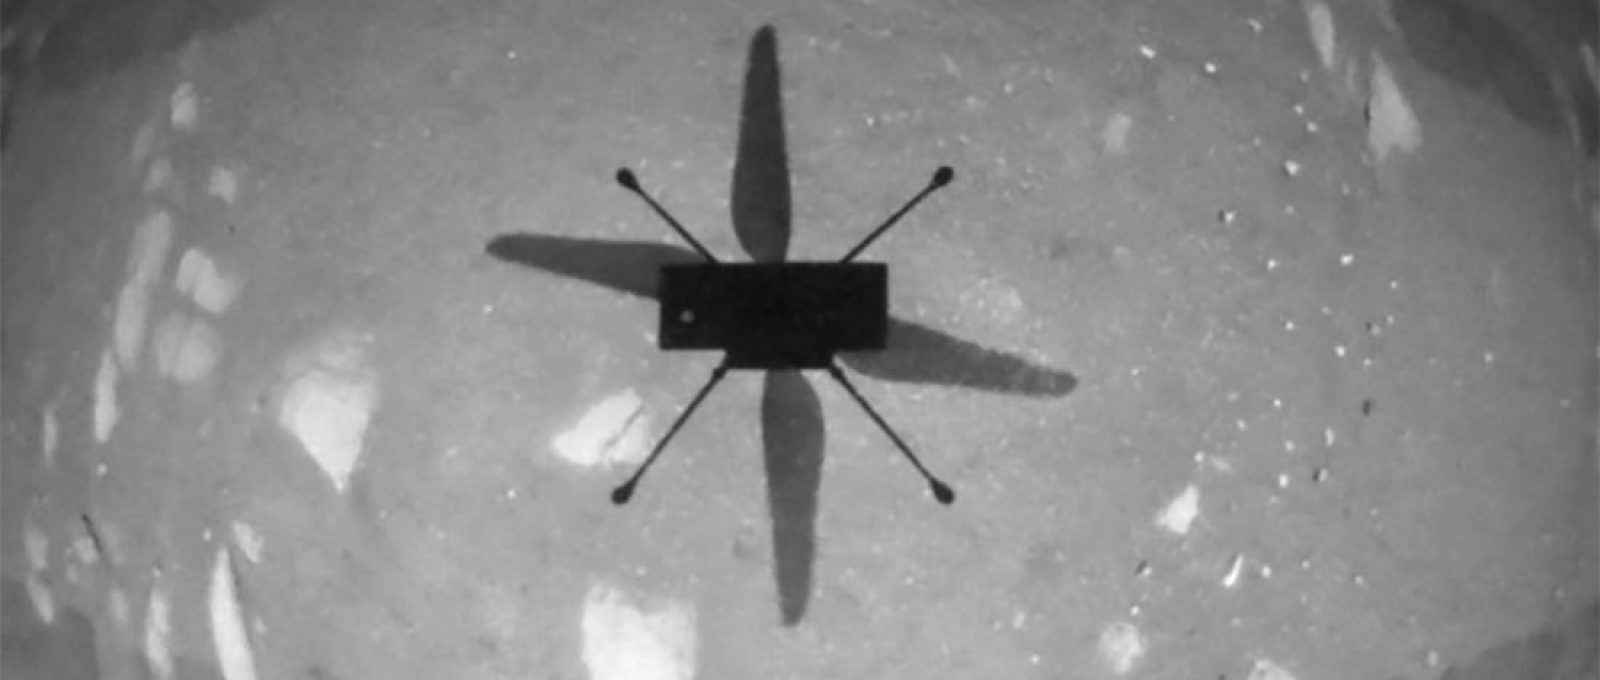 Sombra do helicóptero Ingenuity da NASA durante seu primeiro voo no planeta Marte, em imagem estática tirada de um vídeo (Imagem: NASA/JPL-Caltech/ASU/via Reuters).